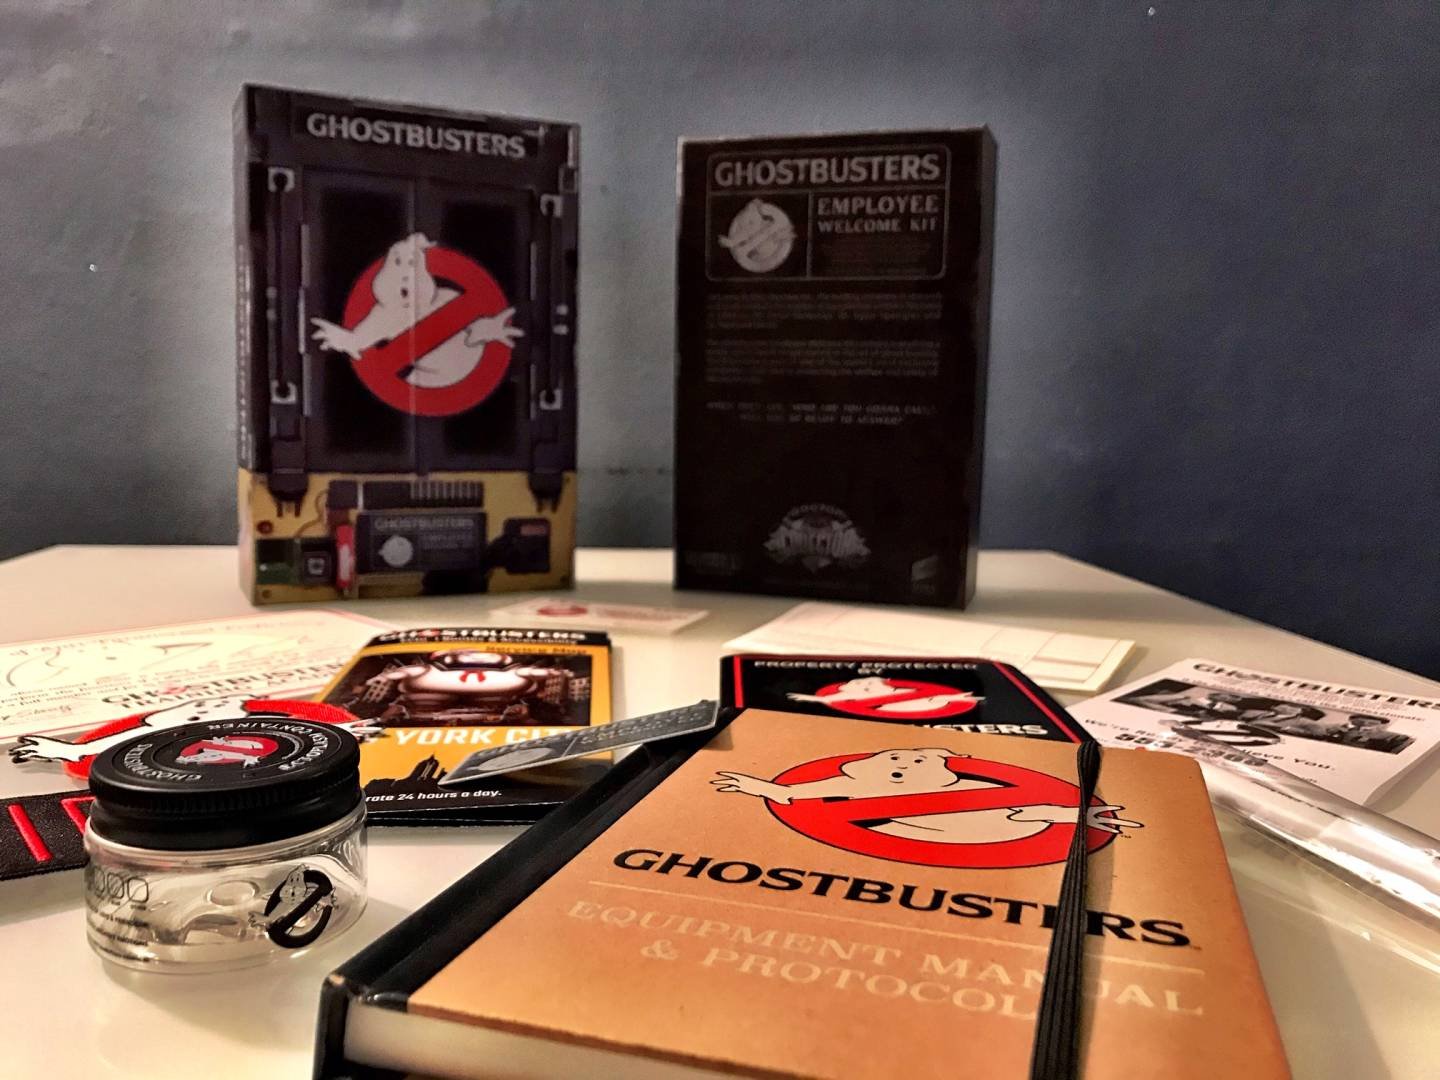 Immagine di Ghostbusters Employee Welcome Kit di Dr.Collector: la recensione